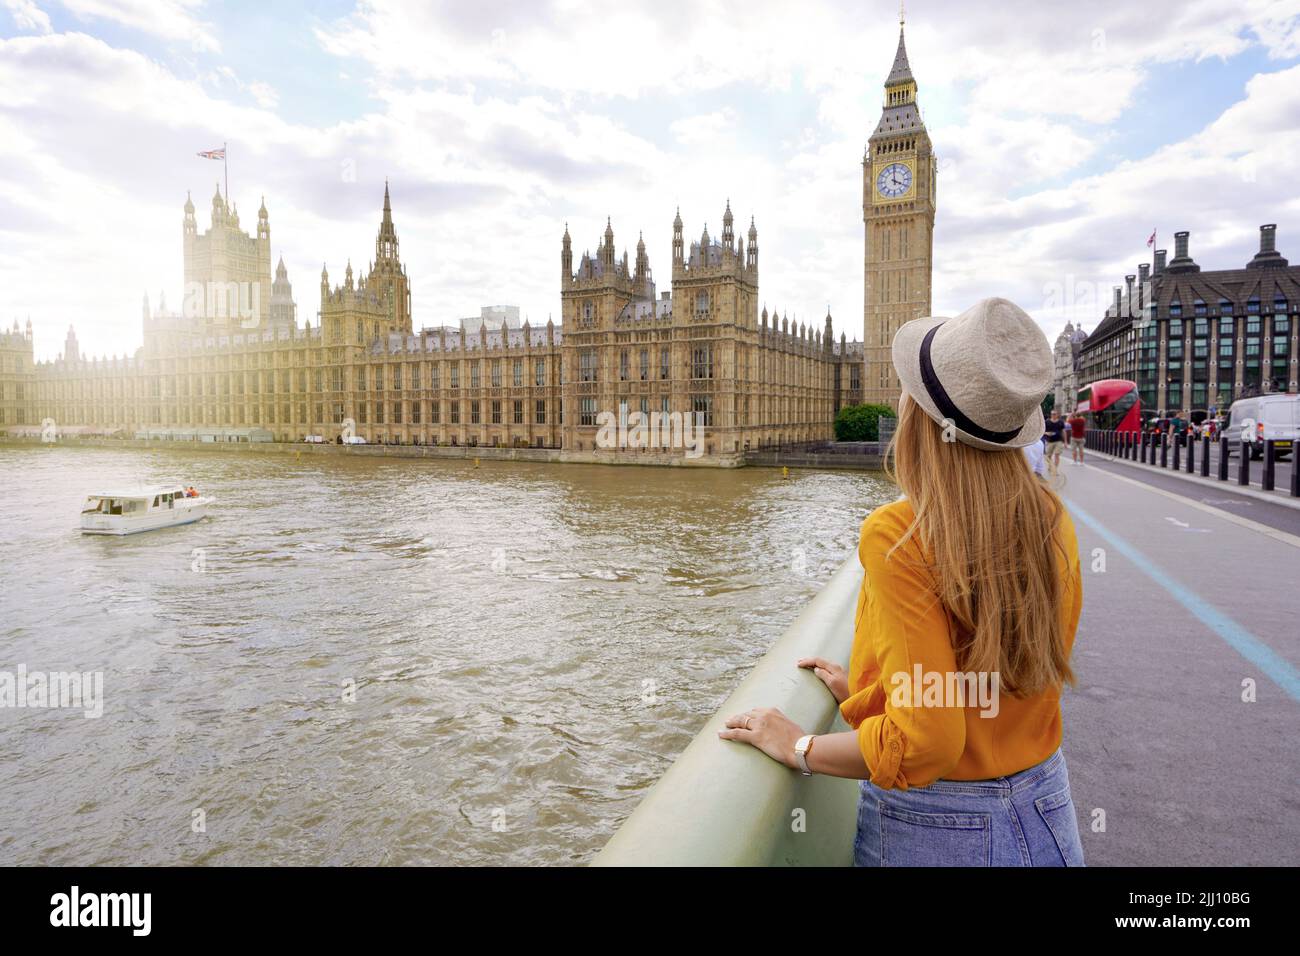 Tourismus in London. Rückansicht eines Reisenden Mädchens, das den Westminster Palast und die Brücke auf der Themse mit dem berühmten Big Ben Turm in London, Großbritannien, bewundern kann. Stockfoto